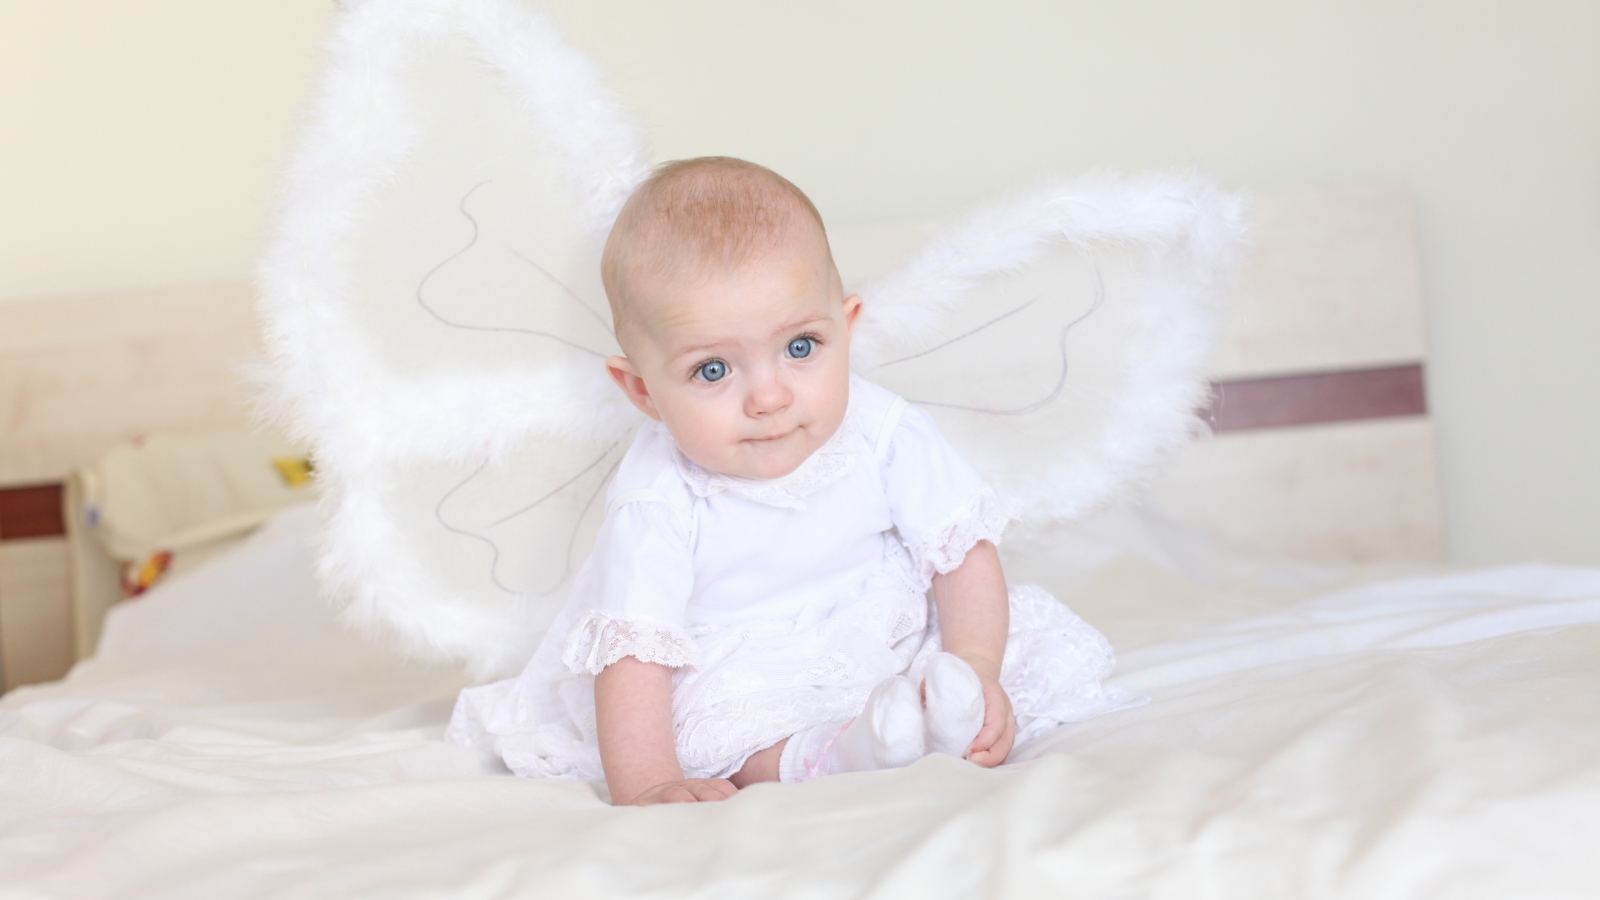 Little Angel for 1600 x 900 HDTV resolution